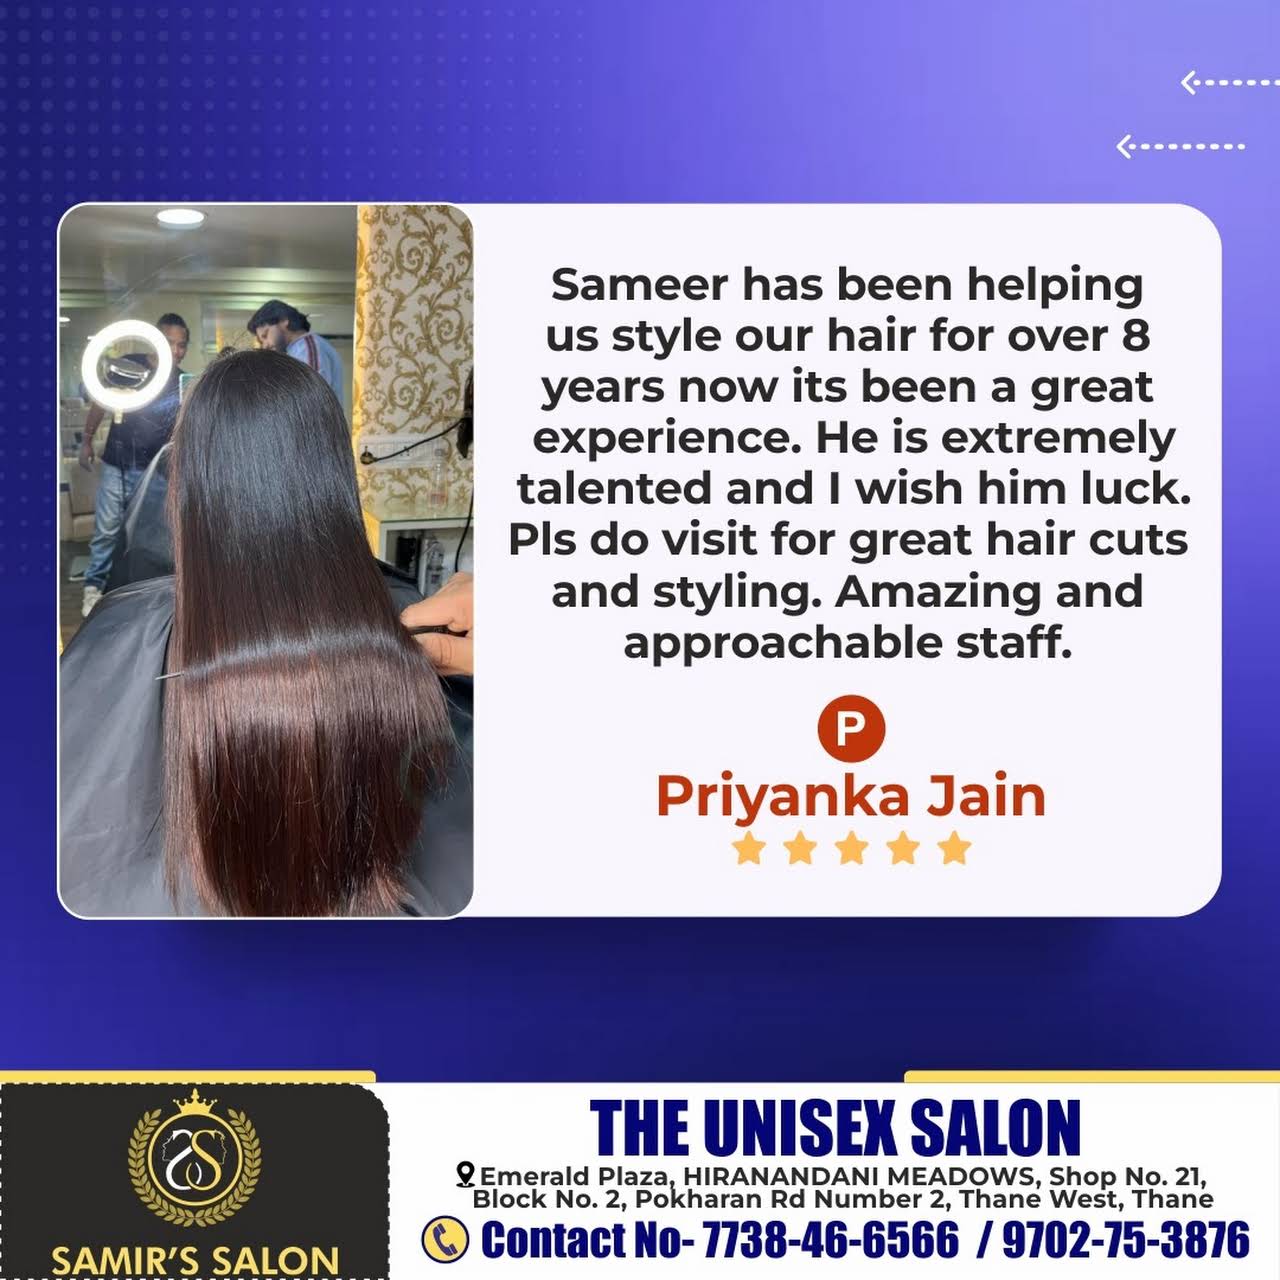 Samir's Salon - Best Unisex Salon in Thane | Best Hair Salon in Thane